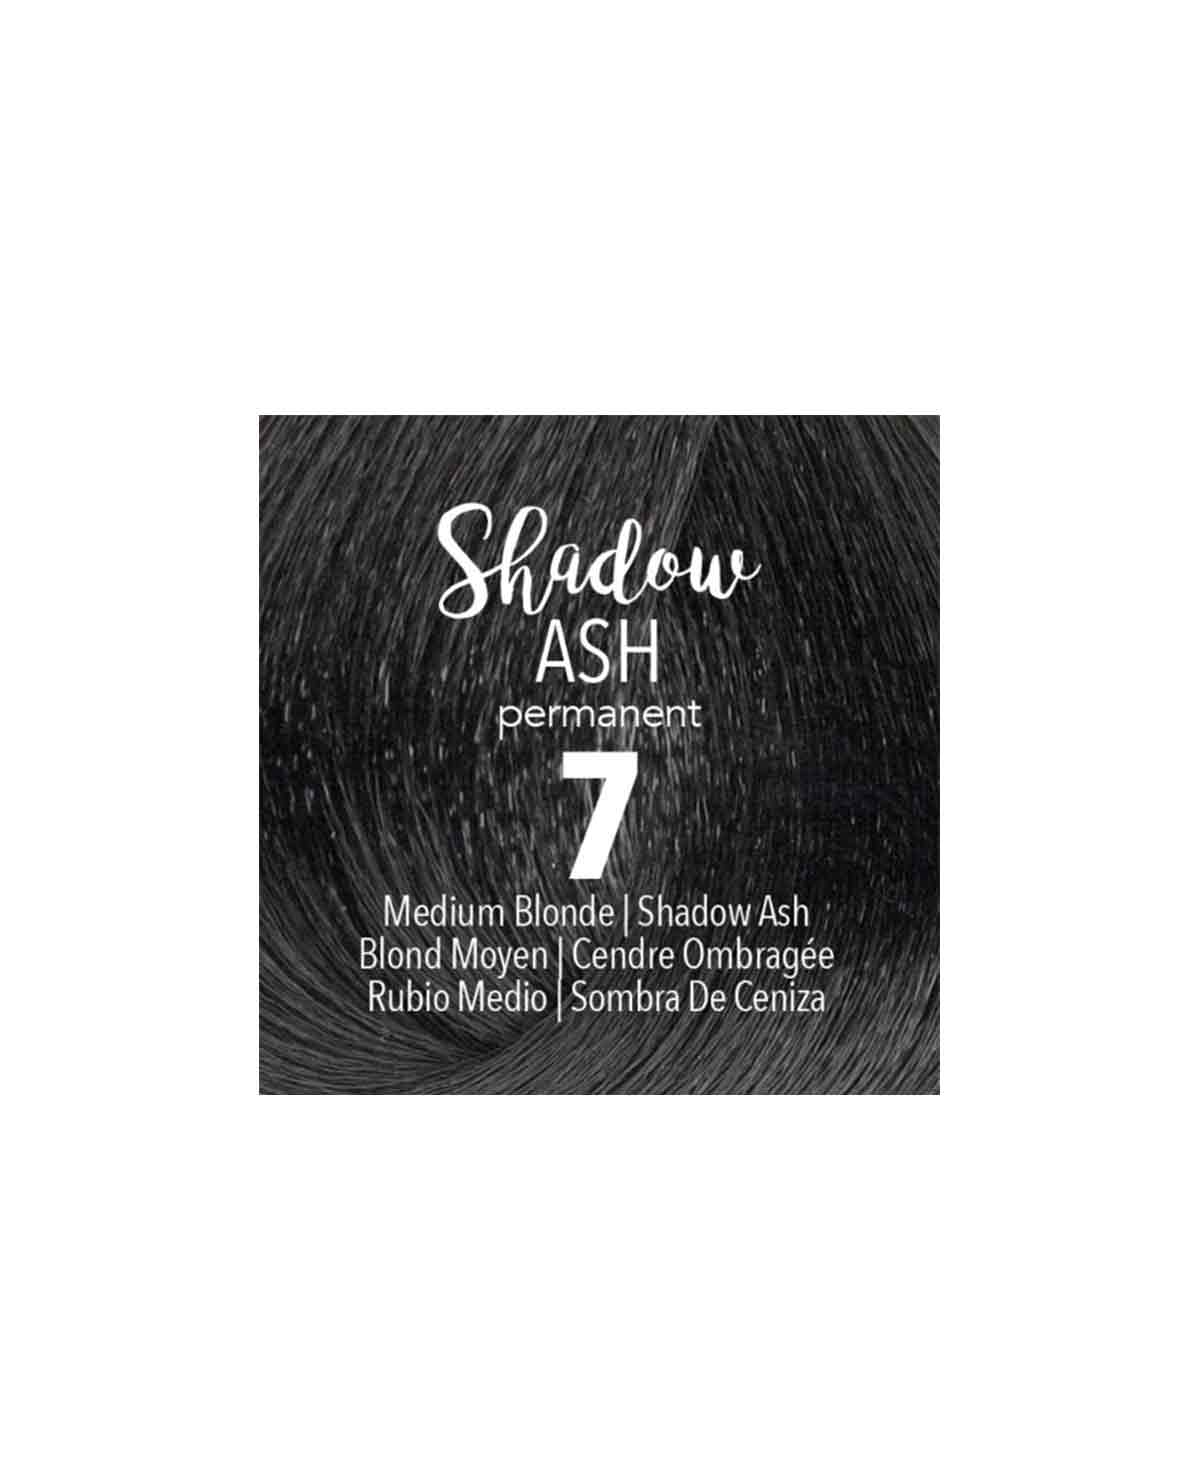 Mydentity - Medium Blonde Shadow Ash 7